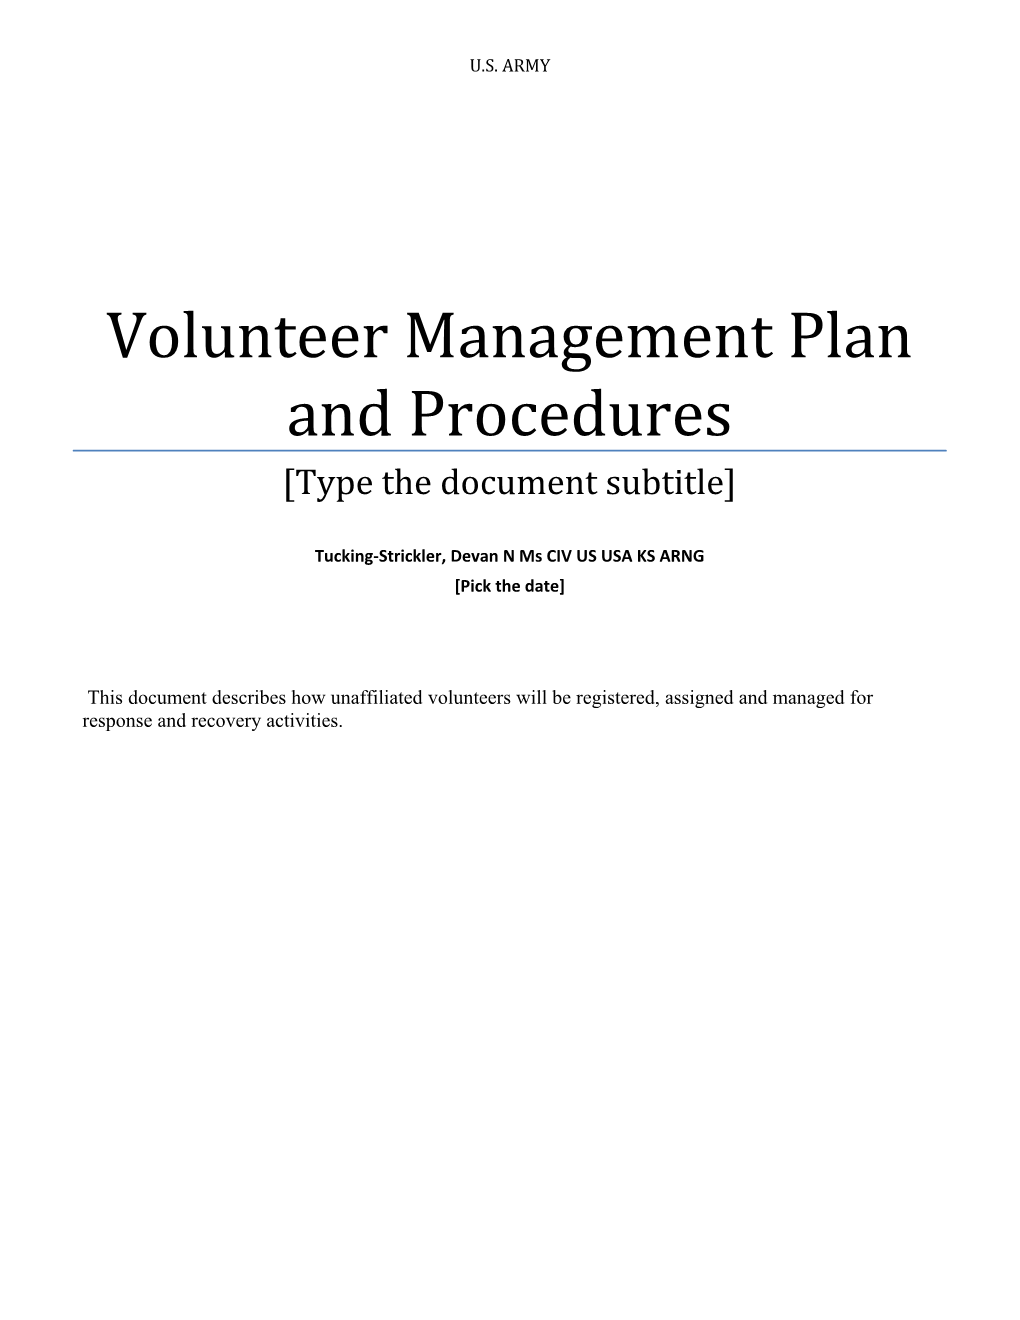 Volunteer Management Plan and Procedures